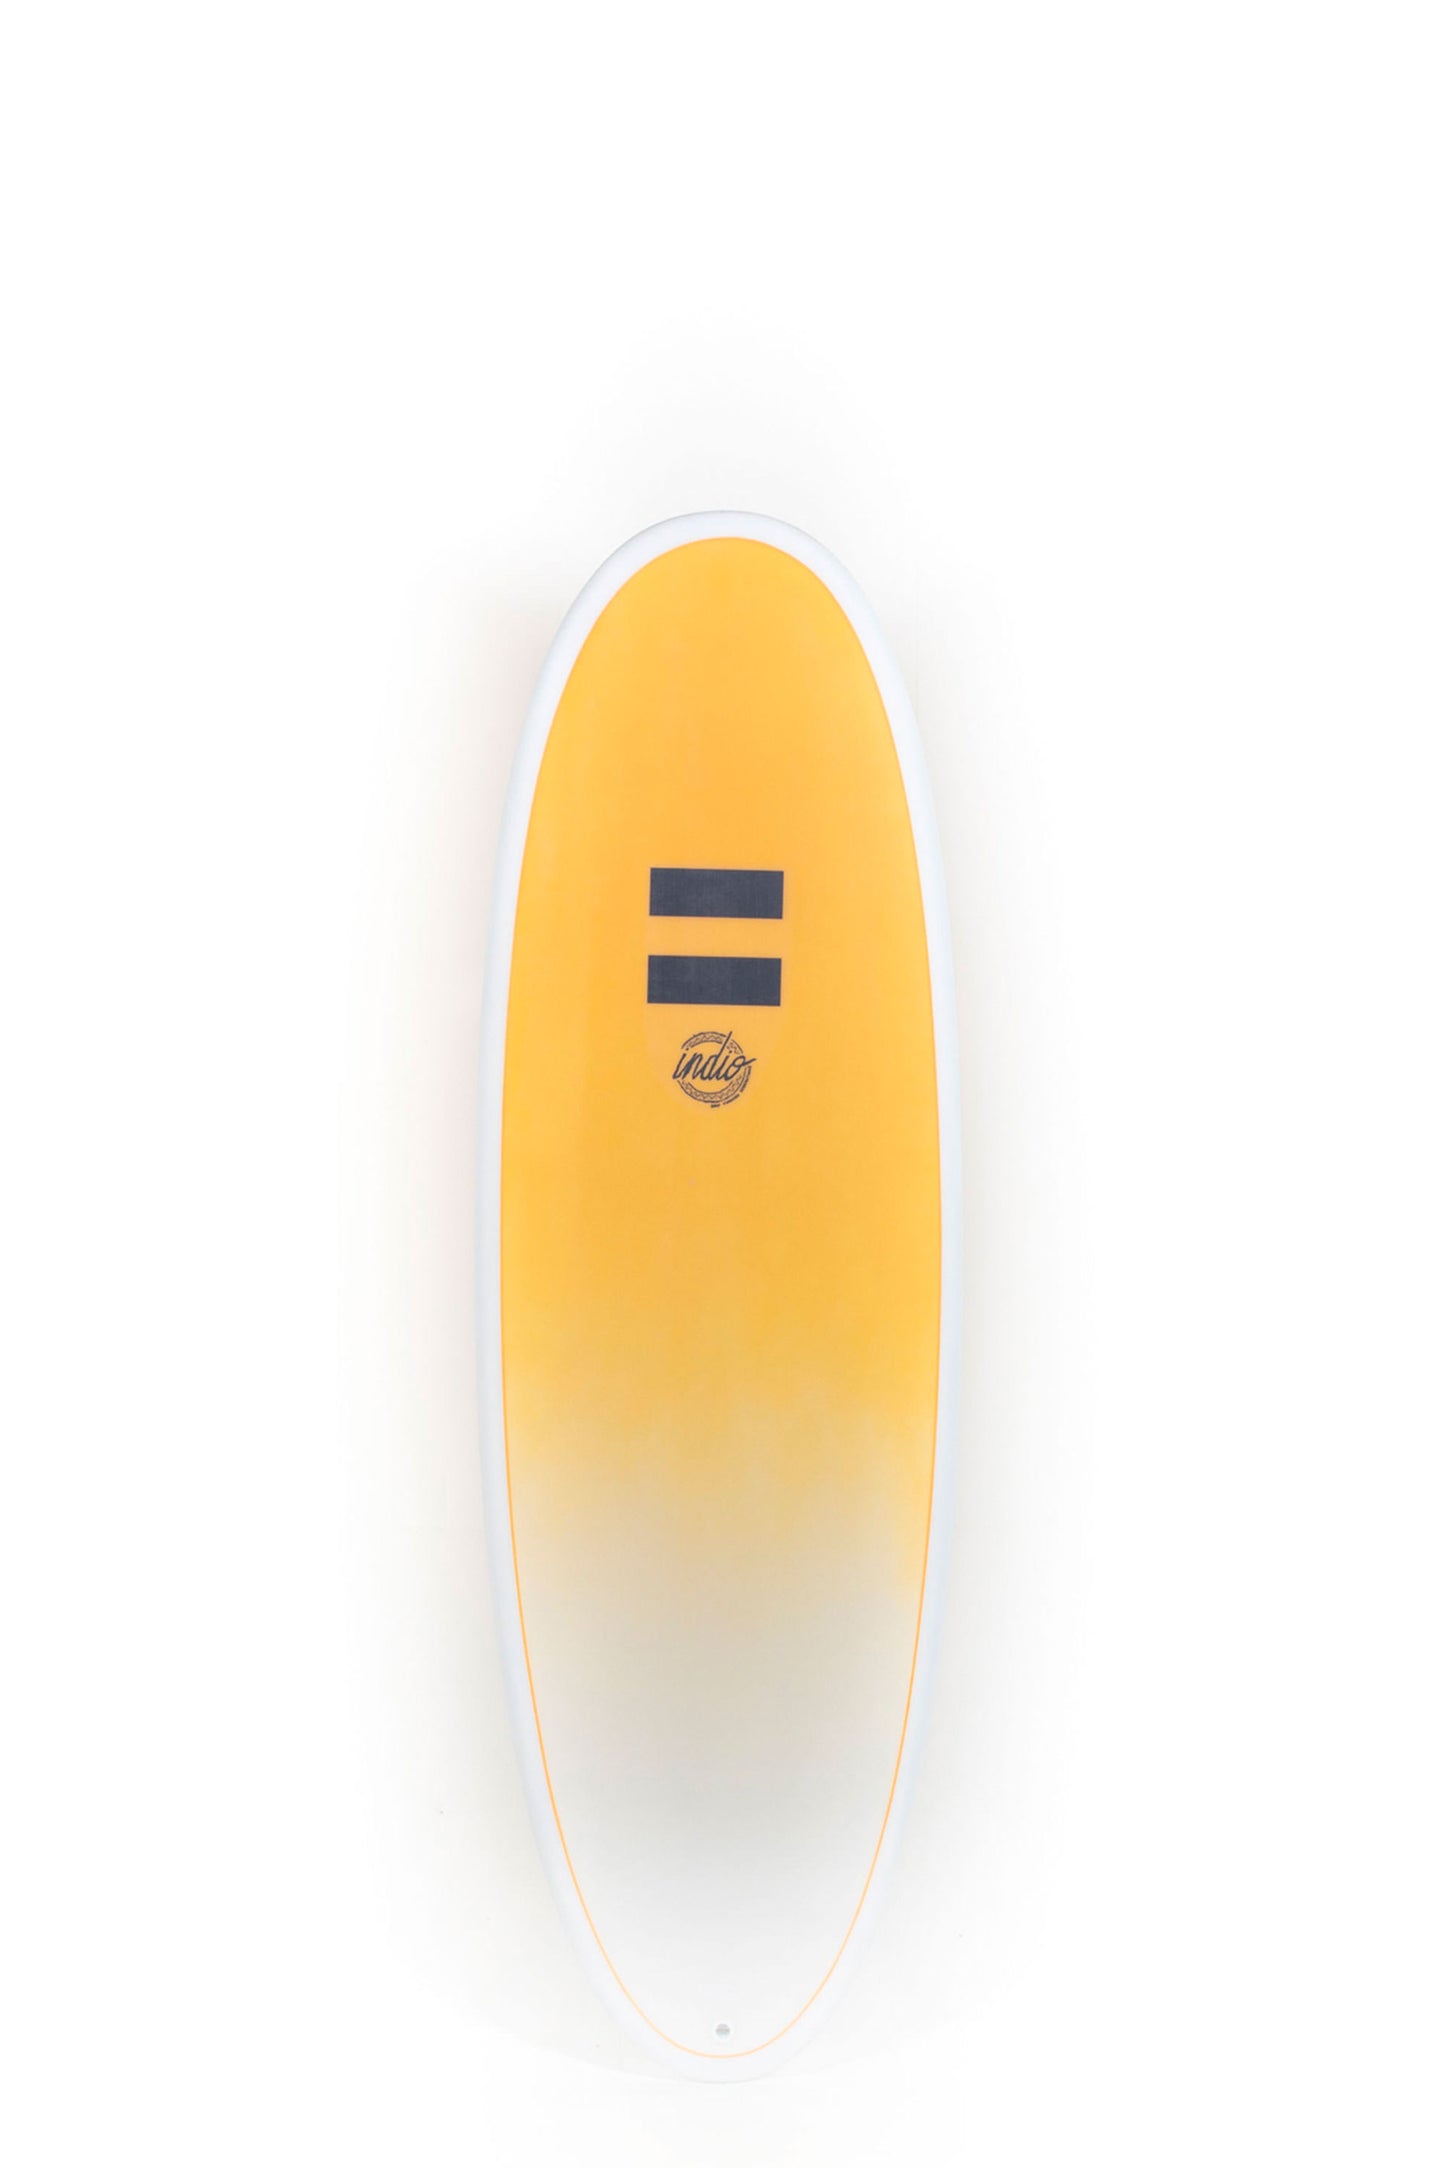 Pukas-Surf-Shop-Indio-Endurance-Surfboards-Plus-Banana-Carbon